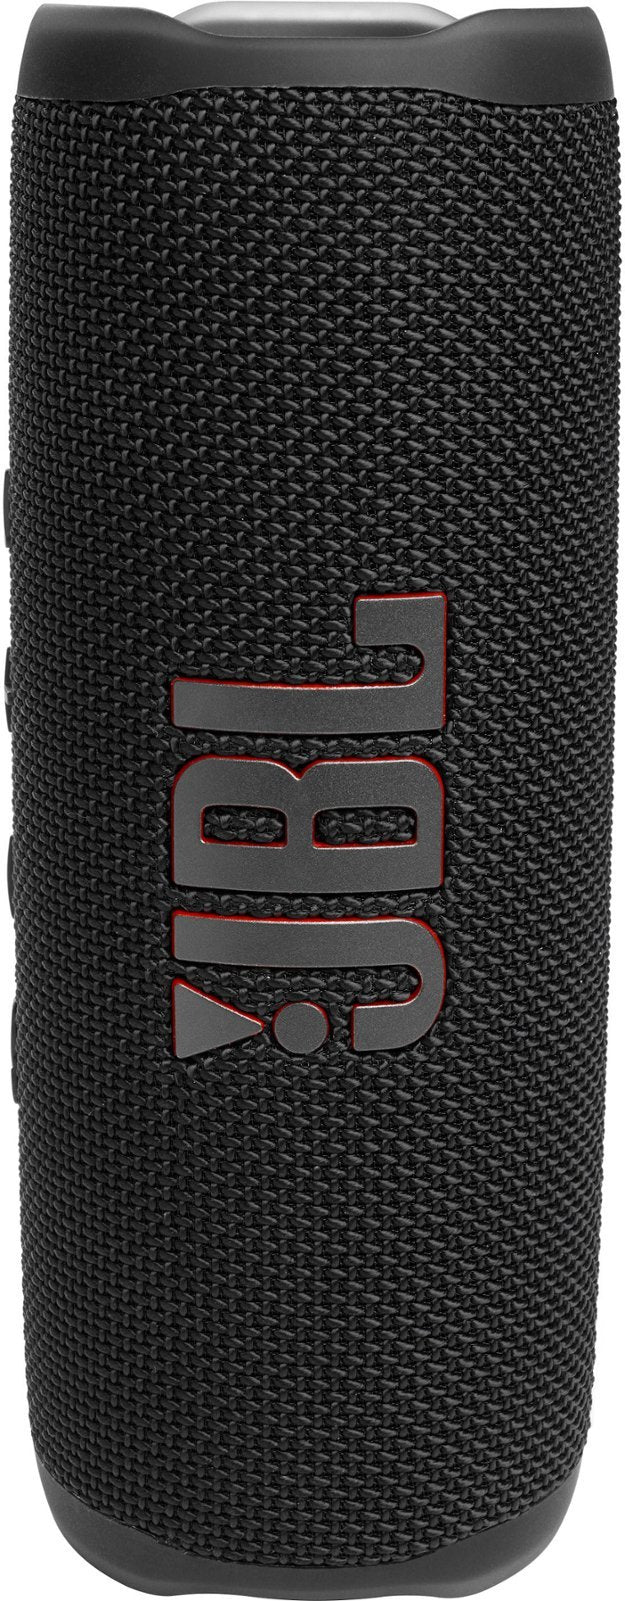 JBL FLIP 6 Portable Wireless Bluetooth Speaker IP67 Waterproof - CS - Black (Certified Refurbished)